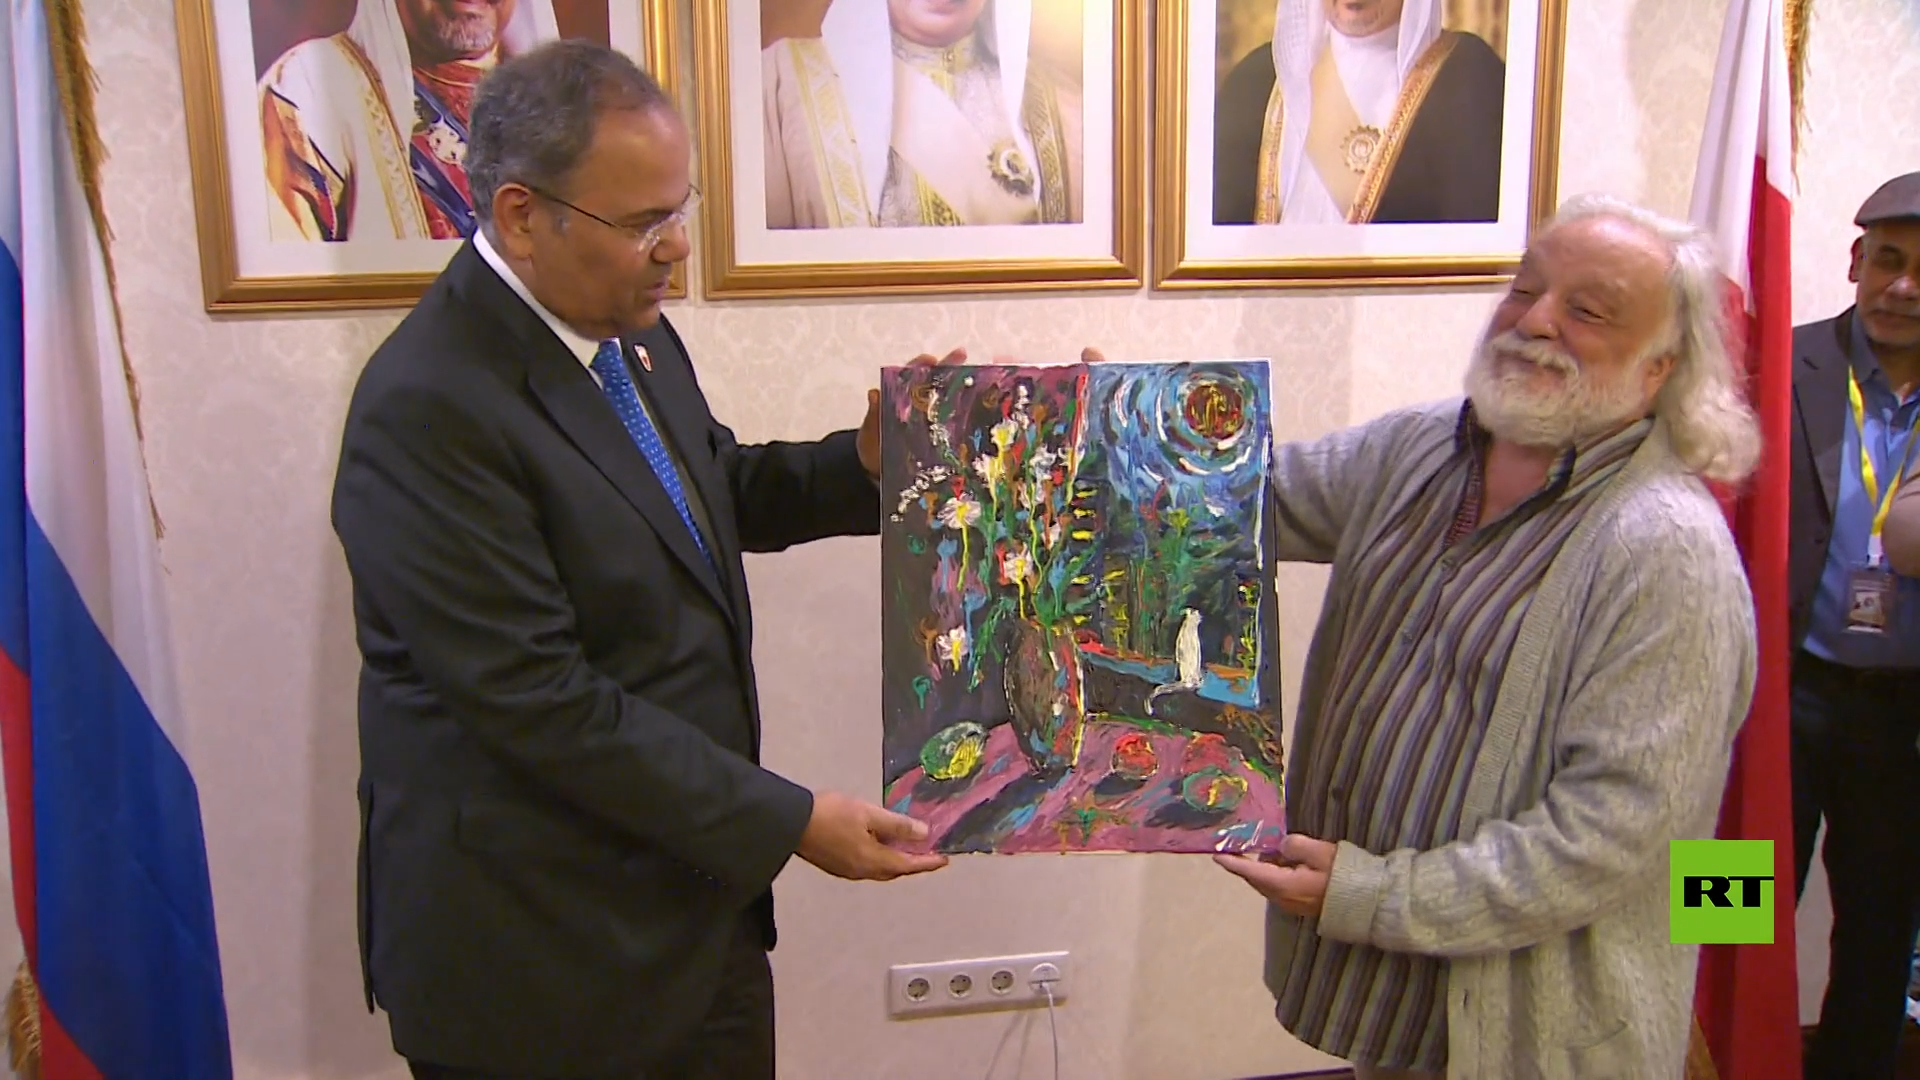 سفارة البحرين في موسكو تنظم فعالية تشكيلية بمشاركة فنانين عرب وروس